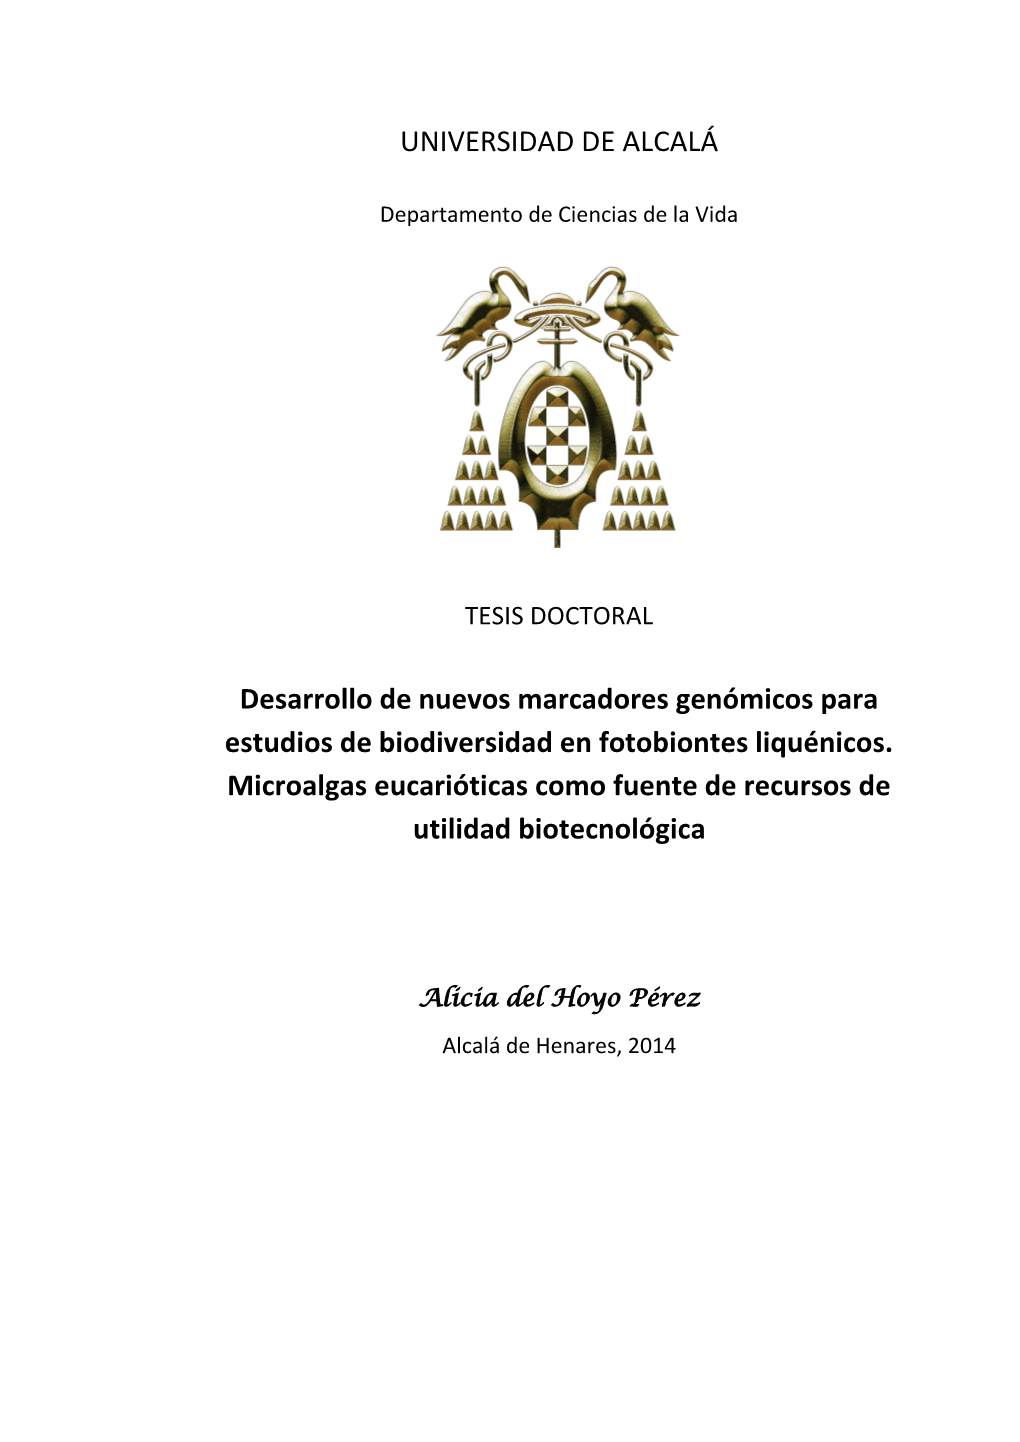 UNIVERSIDAD DE ALCALÁ Desarrollo De Nuevos Marcadores Genómicos Para Estudios De Biodiversidad En Fotobiontes Liquénicos